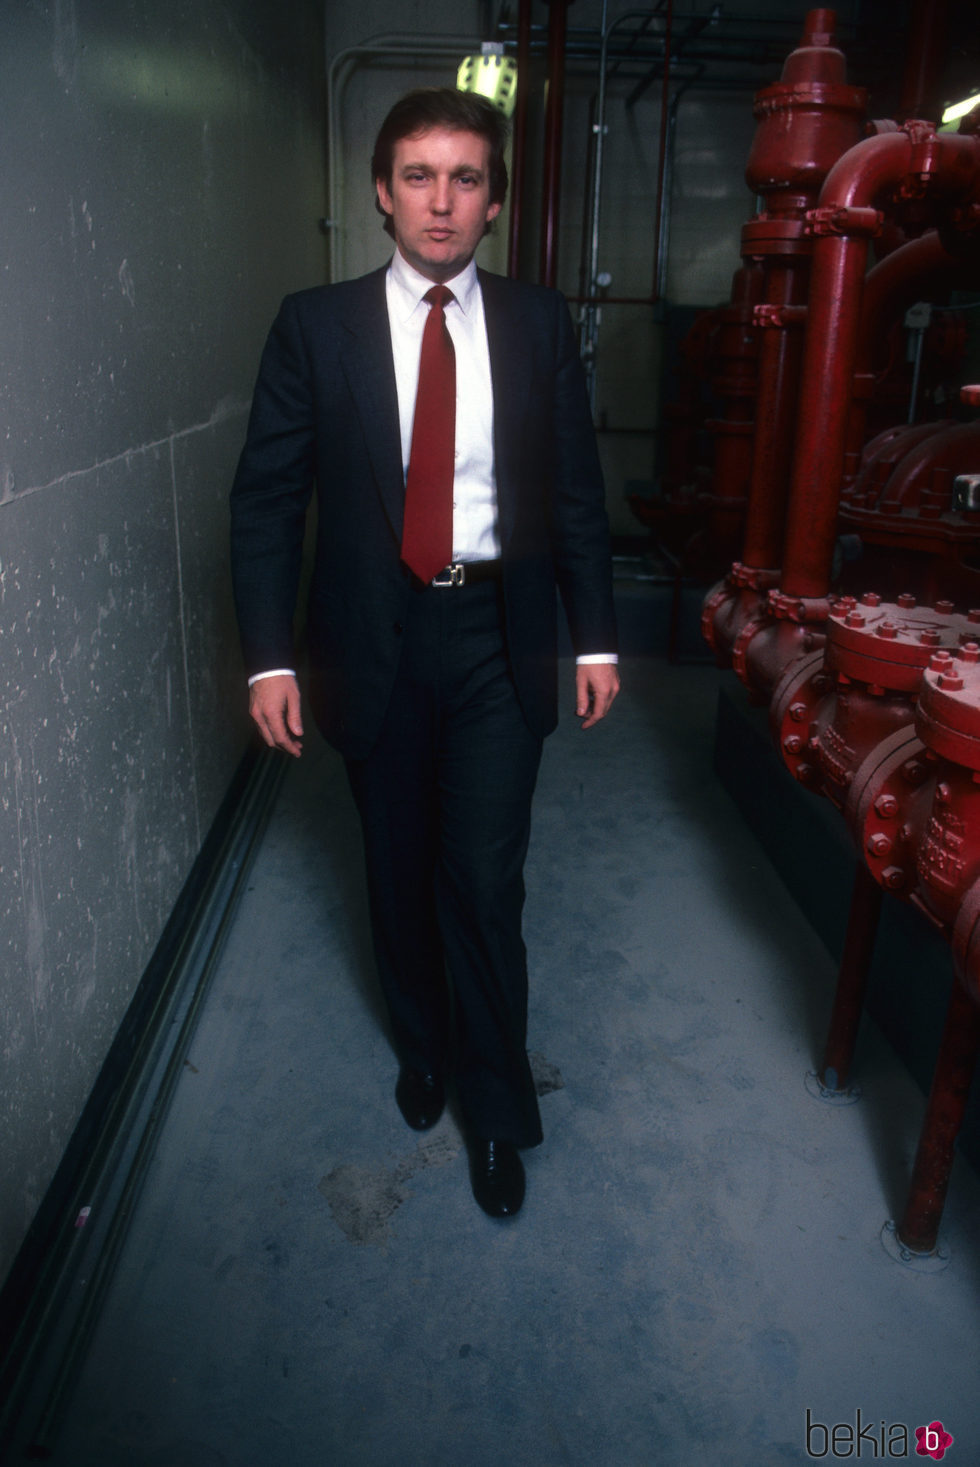 Donald Trump en 1984